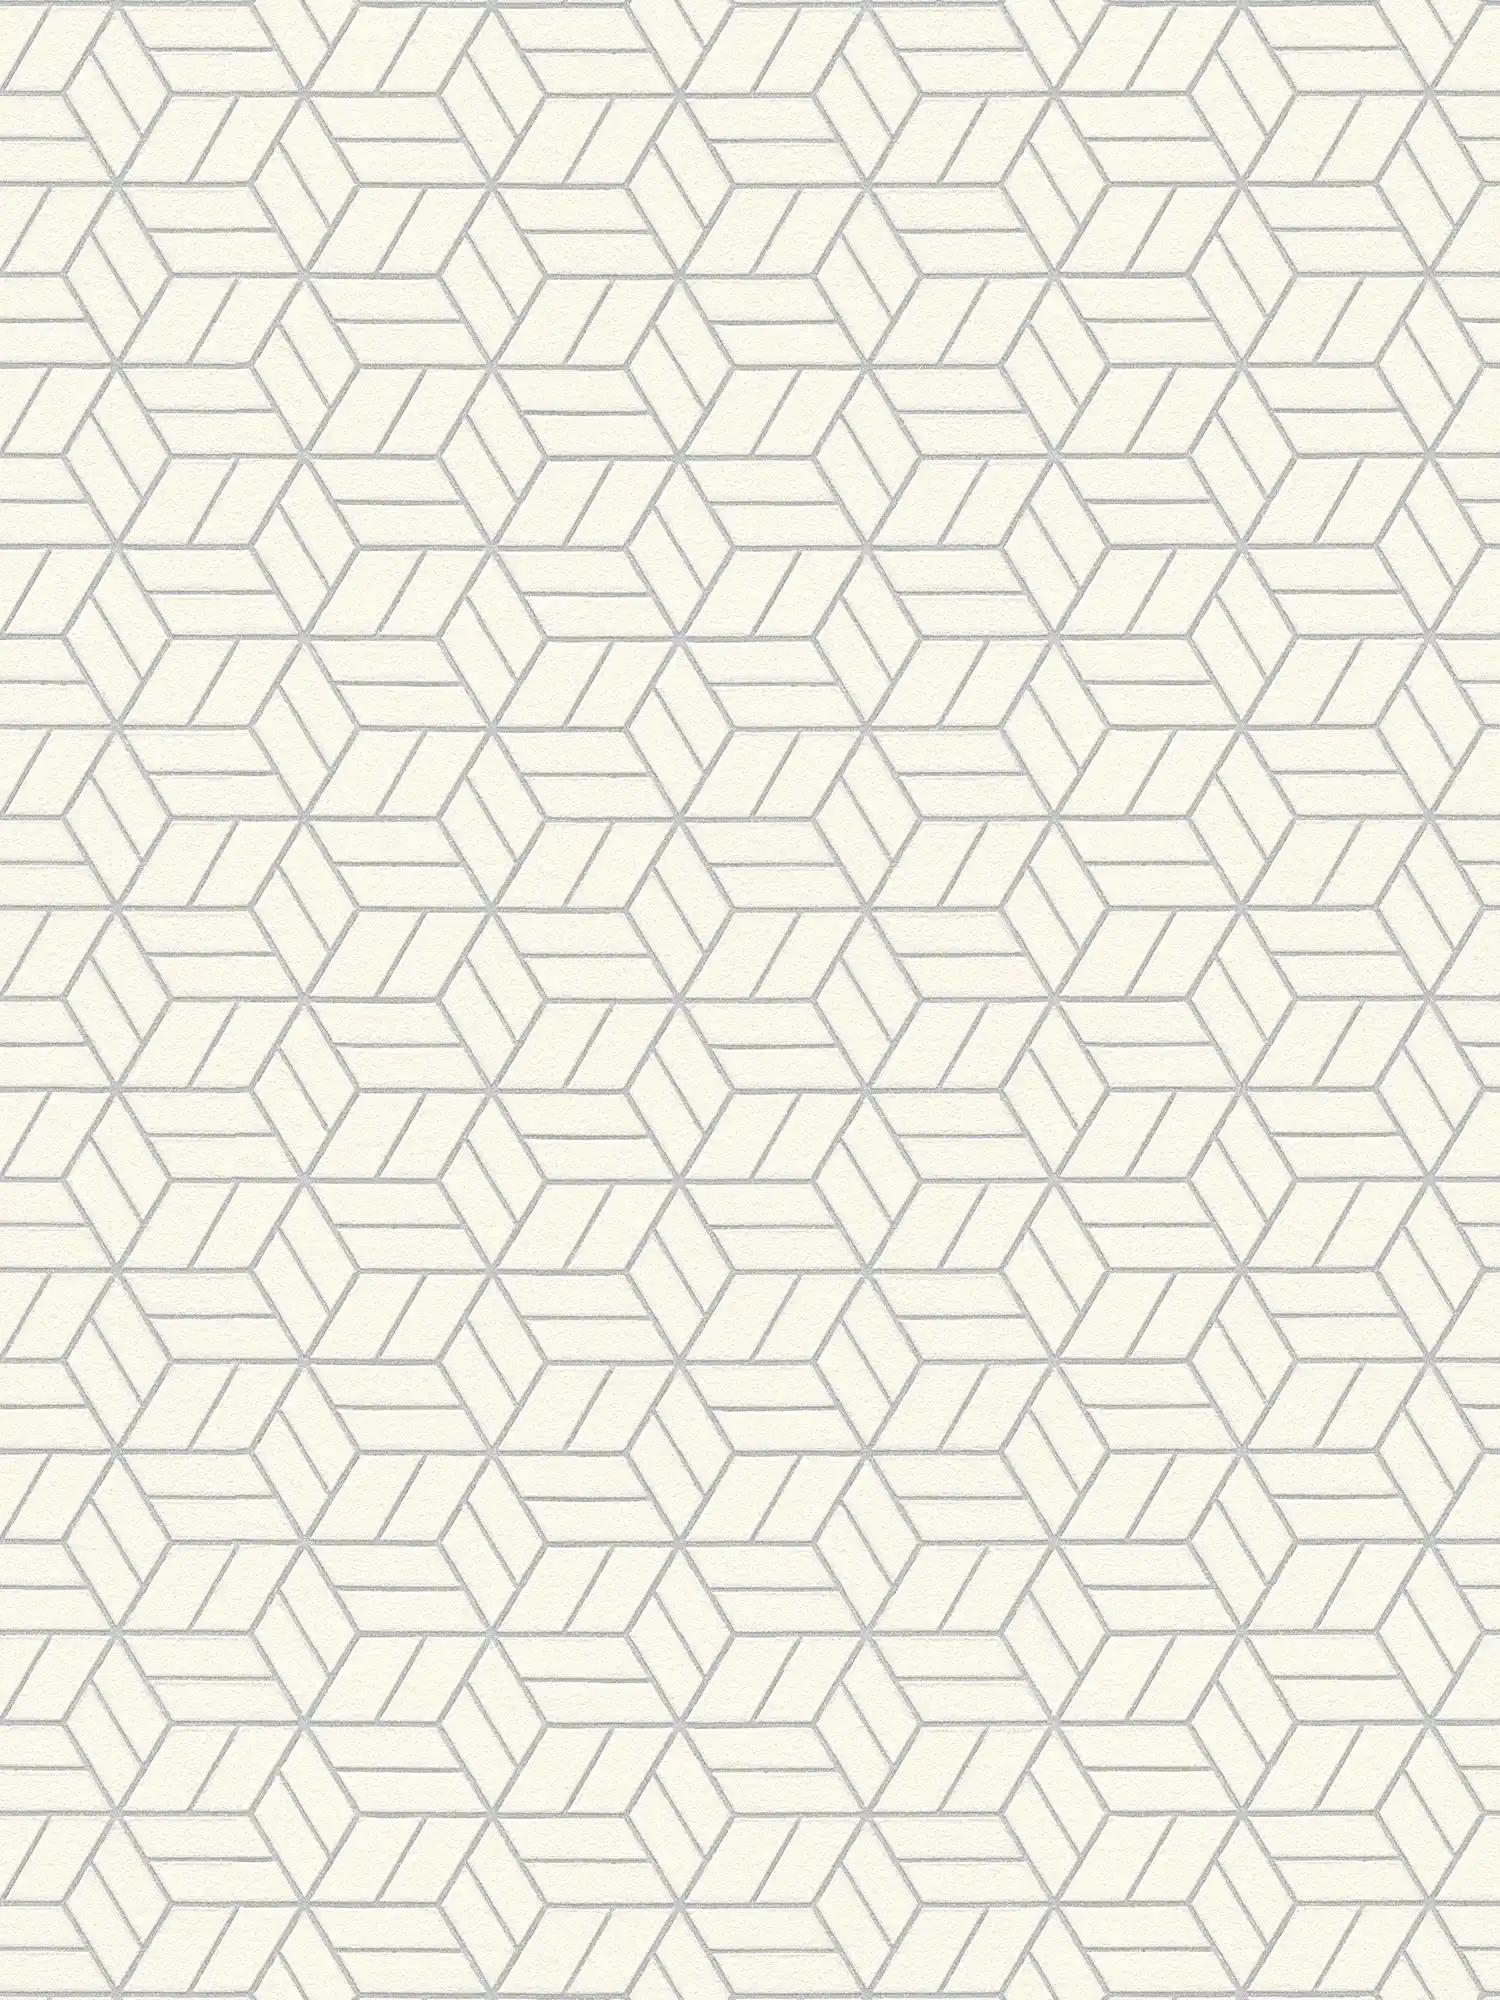 Tapete geometrisches Muster & Glitzer-Effekt – Silber, Grau, Weiß
